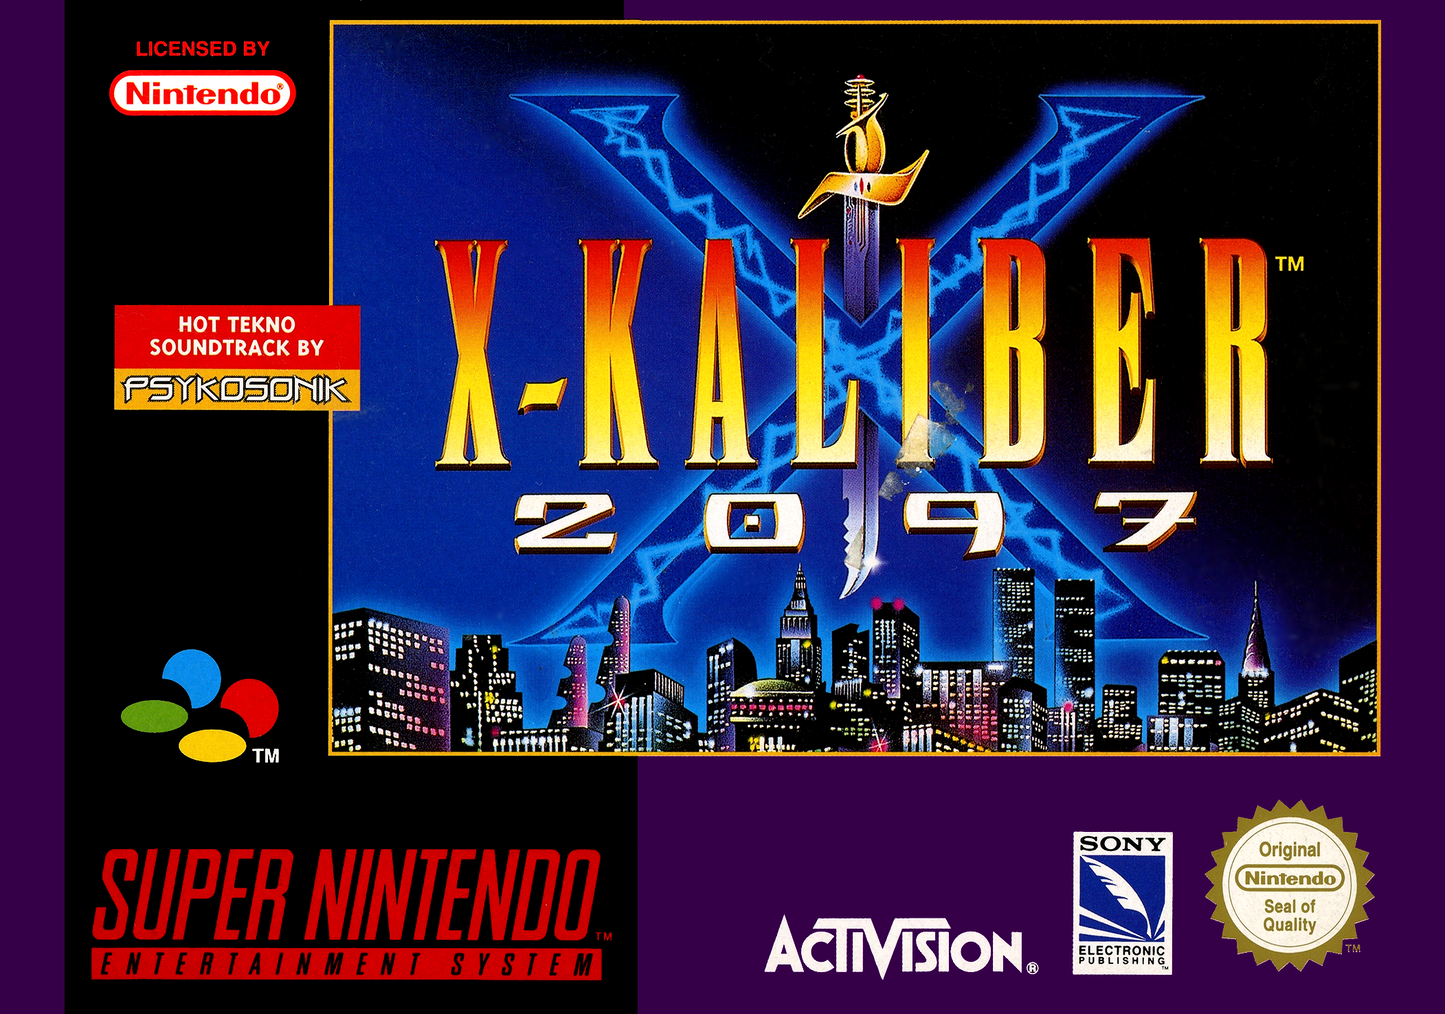 X-Kaliber 2097